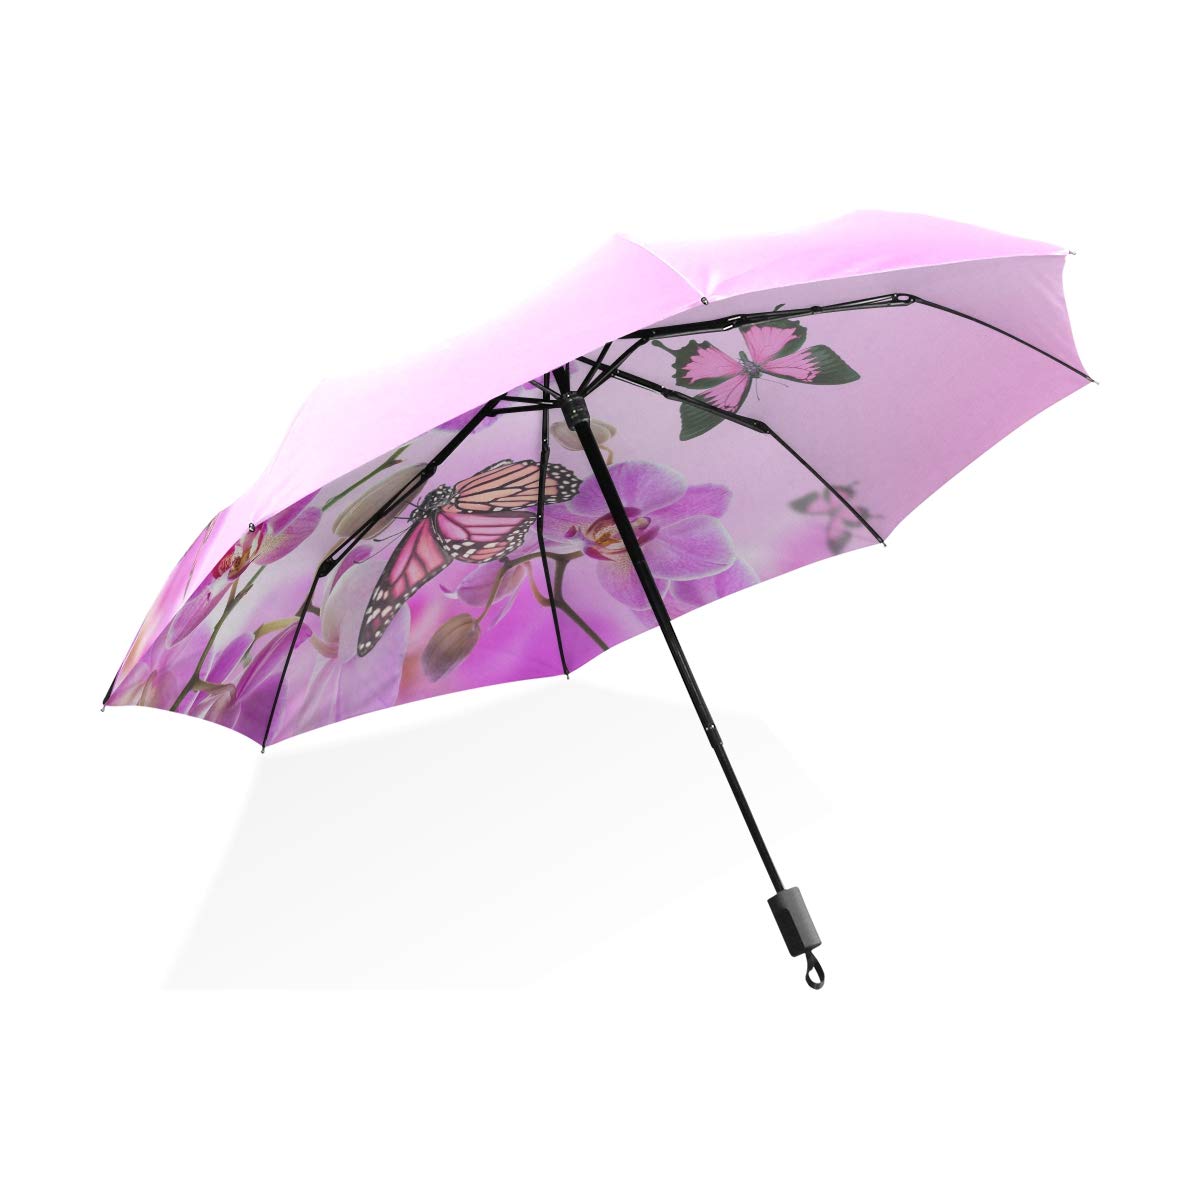 ISAOA Automatischer Reise-Regenschirm, kompakt, faltbar, mit rosa Schmetterlingen auf Blume, winddicht, ultraleicht, UV-Schutz, Regenschirm für Damen und Herren